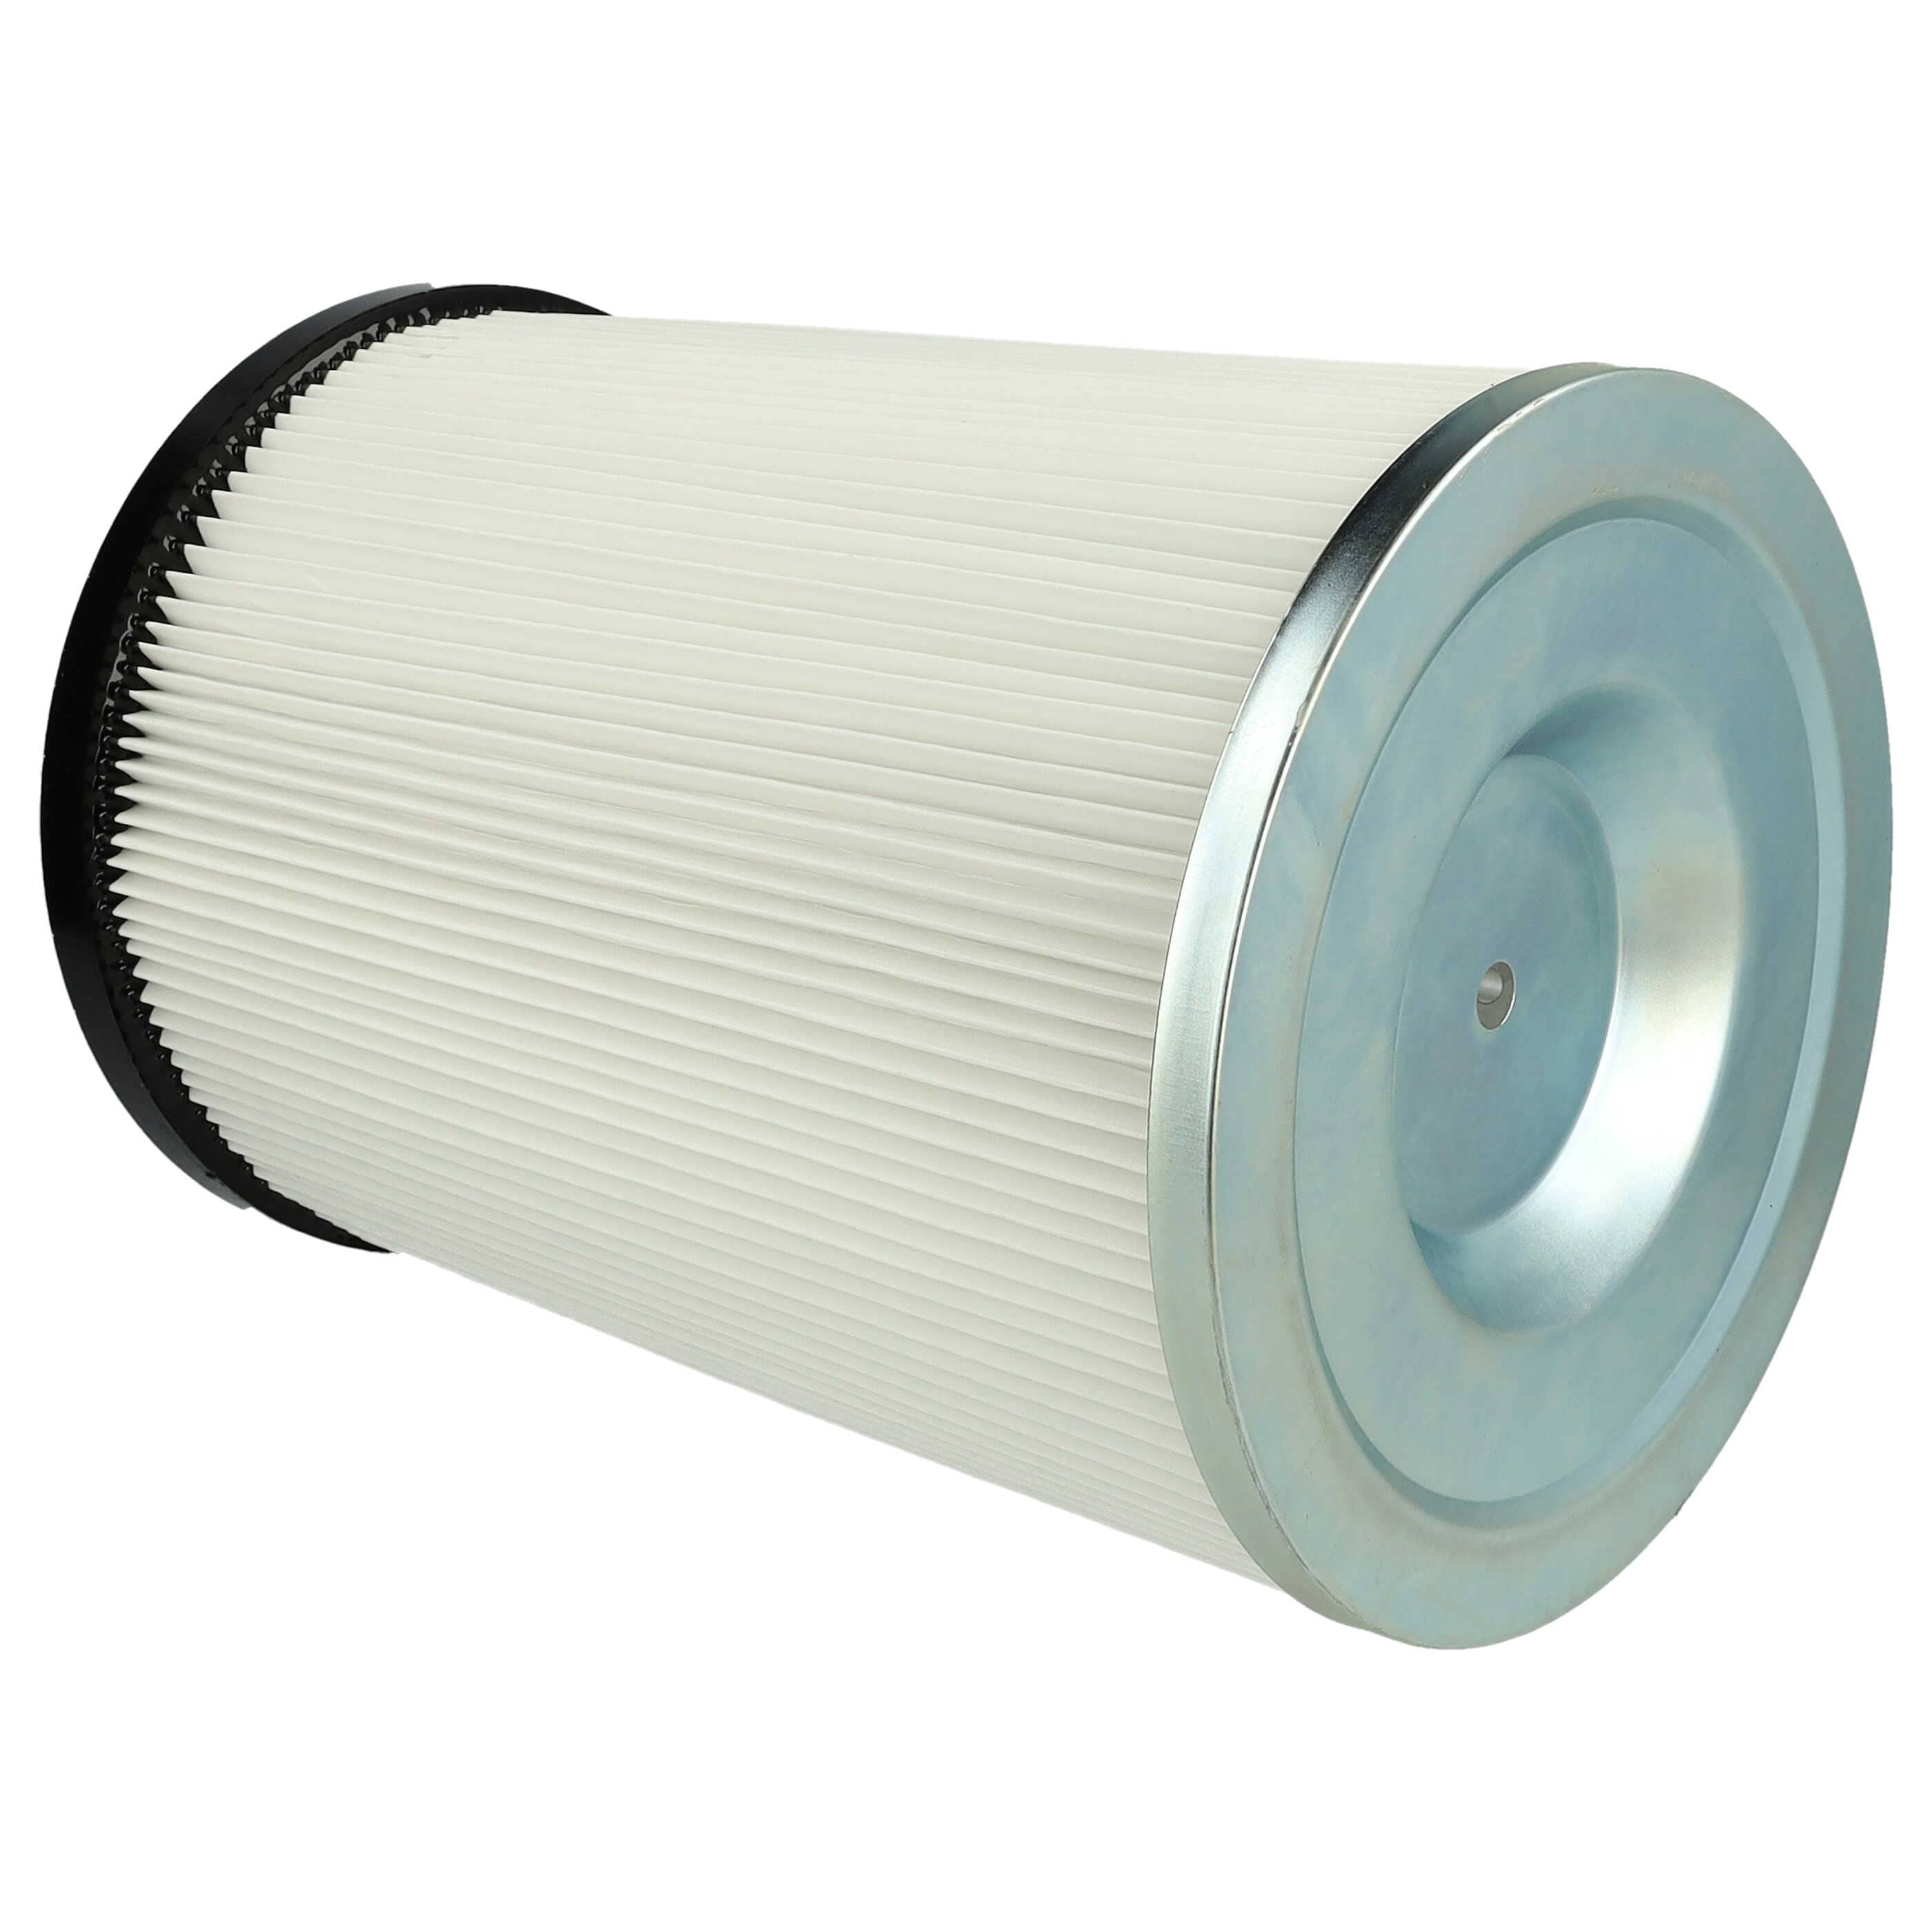 Filtro reemplaza Kärcher 9.770-988.0, 6.907-038.0 para aspiradora filtro de cartucho, blanco